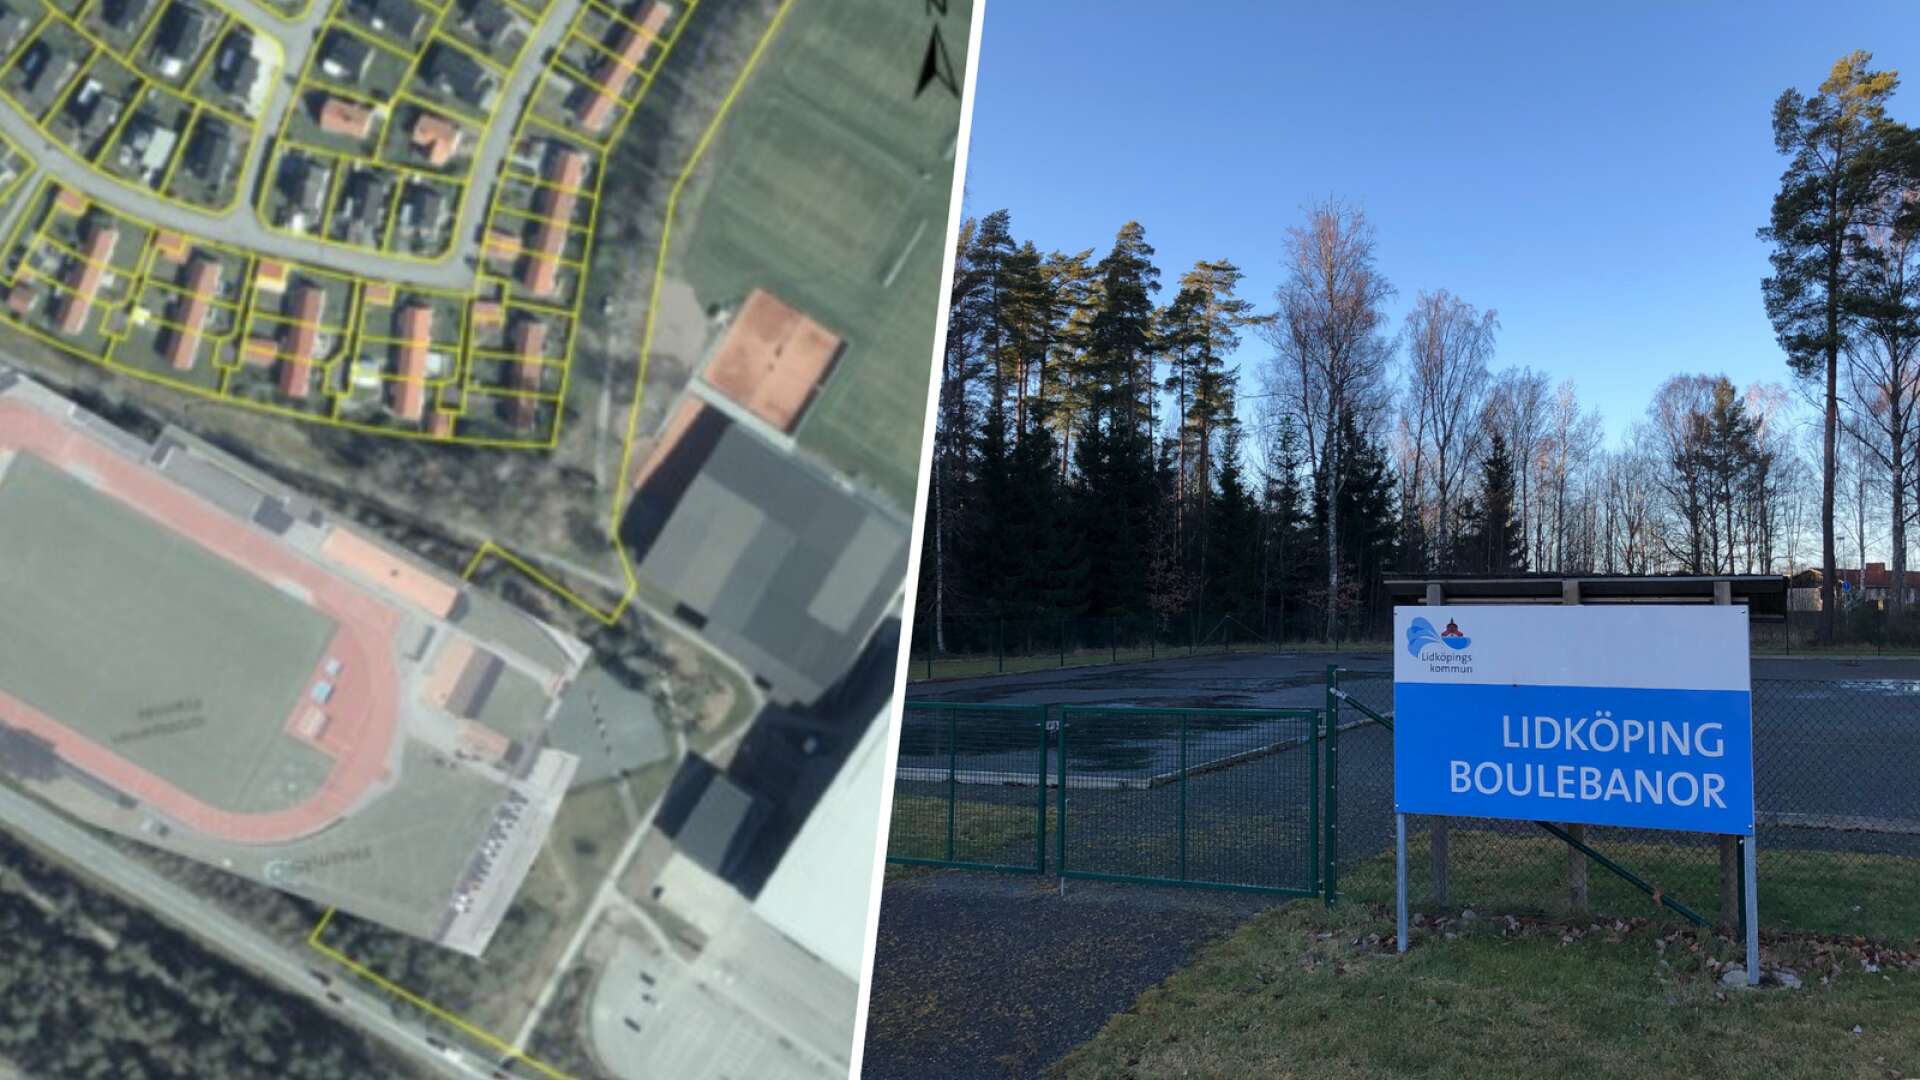 Till vänster i bild: en fiktiv kartbild över en friidrottsanläggning vid tennisbanan. På platsen finns i dag skog samt Lidköping boulebanor.